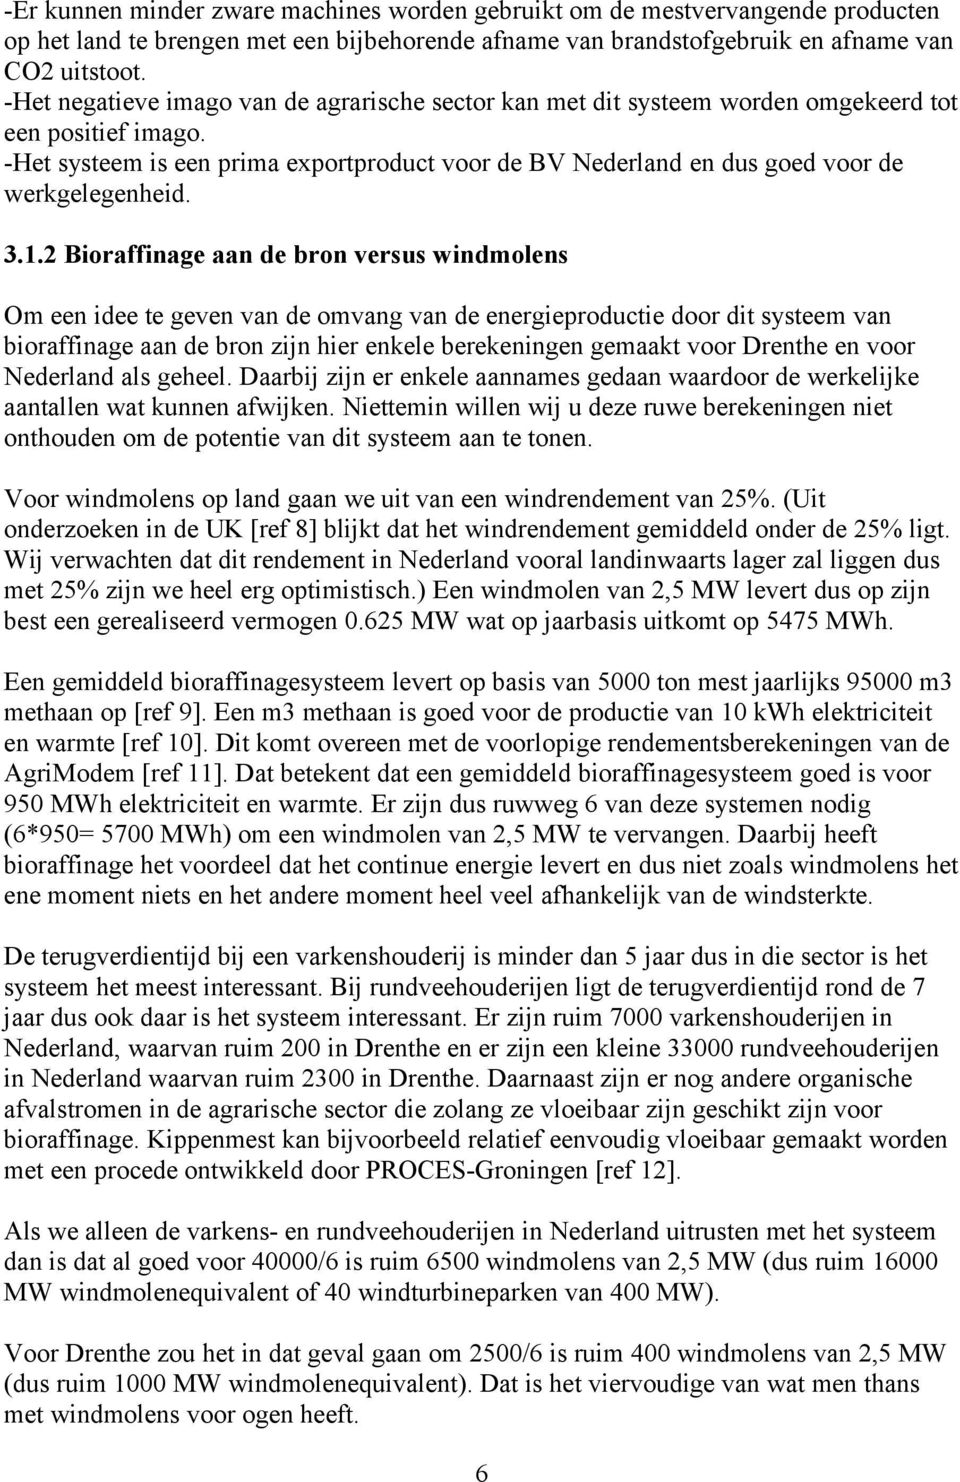 -Het systeem is een prima exportproduct voor de BV Nederland en dus goed voor de werkgelegenheid. 3.1.